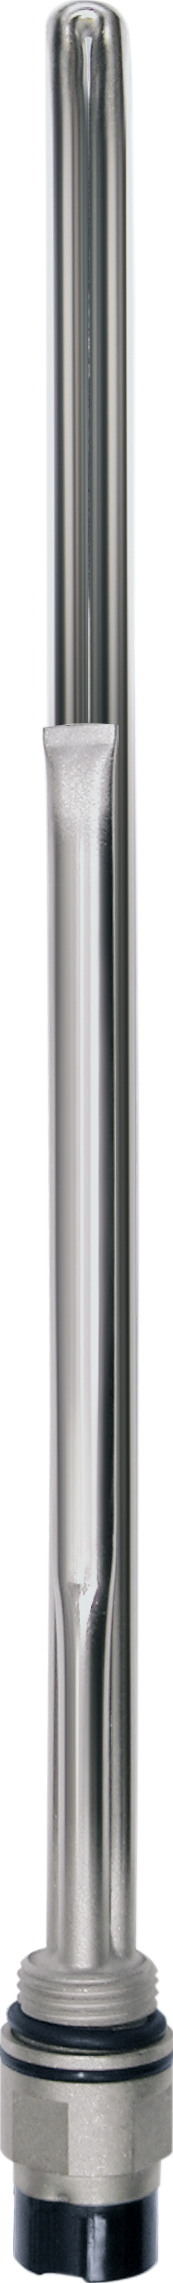 Нагревательный элемент Terma Split 600 w с блоком управления KTX3 белый, спиральный кабель с вилкой